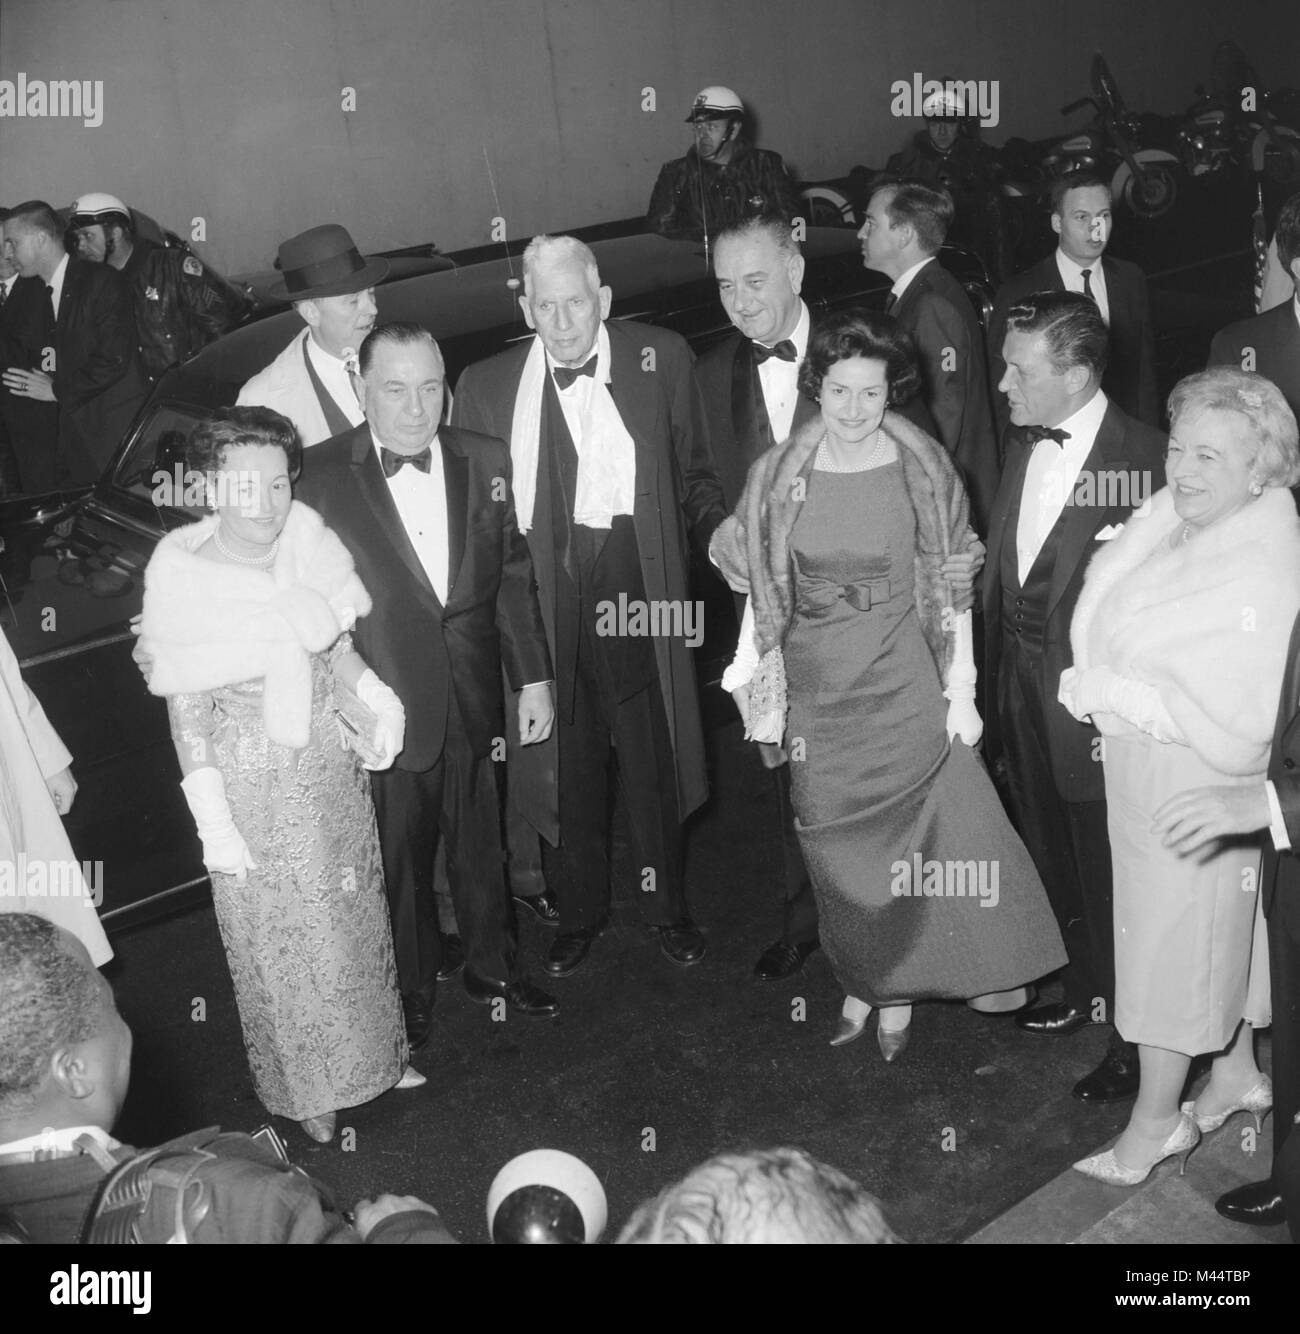 Le Président Lyndon Johnson et Lady Bird arrivent à un événement à Chicago, ca. 1964. Banque D'Images